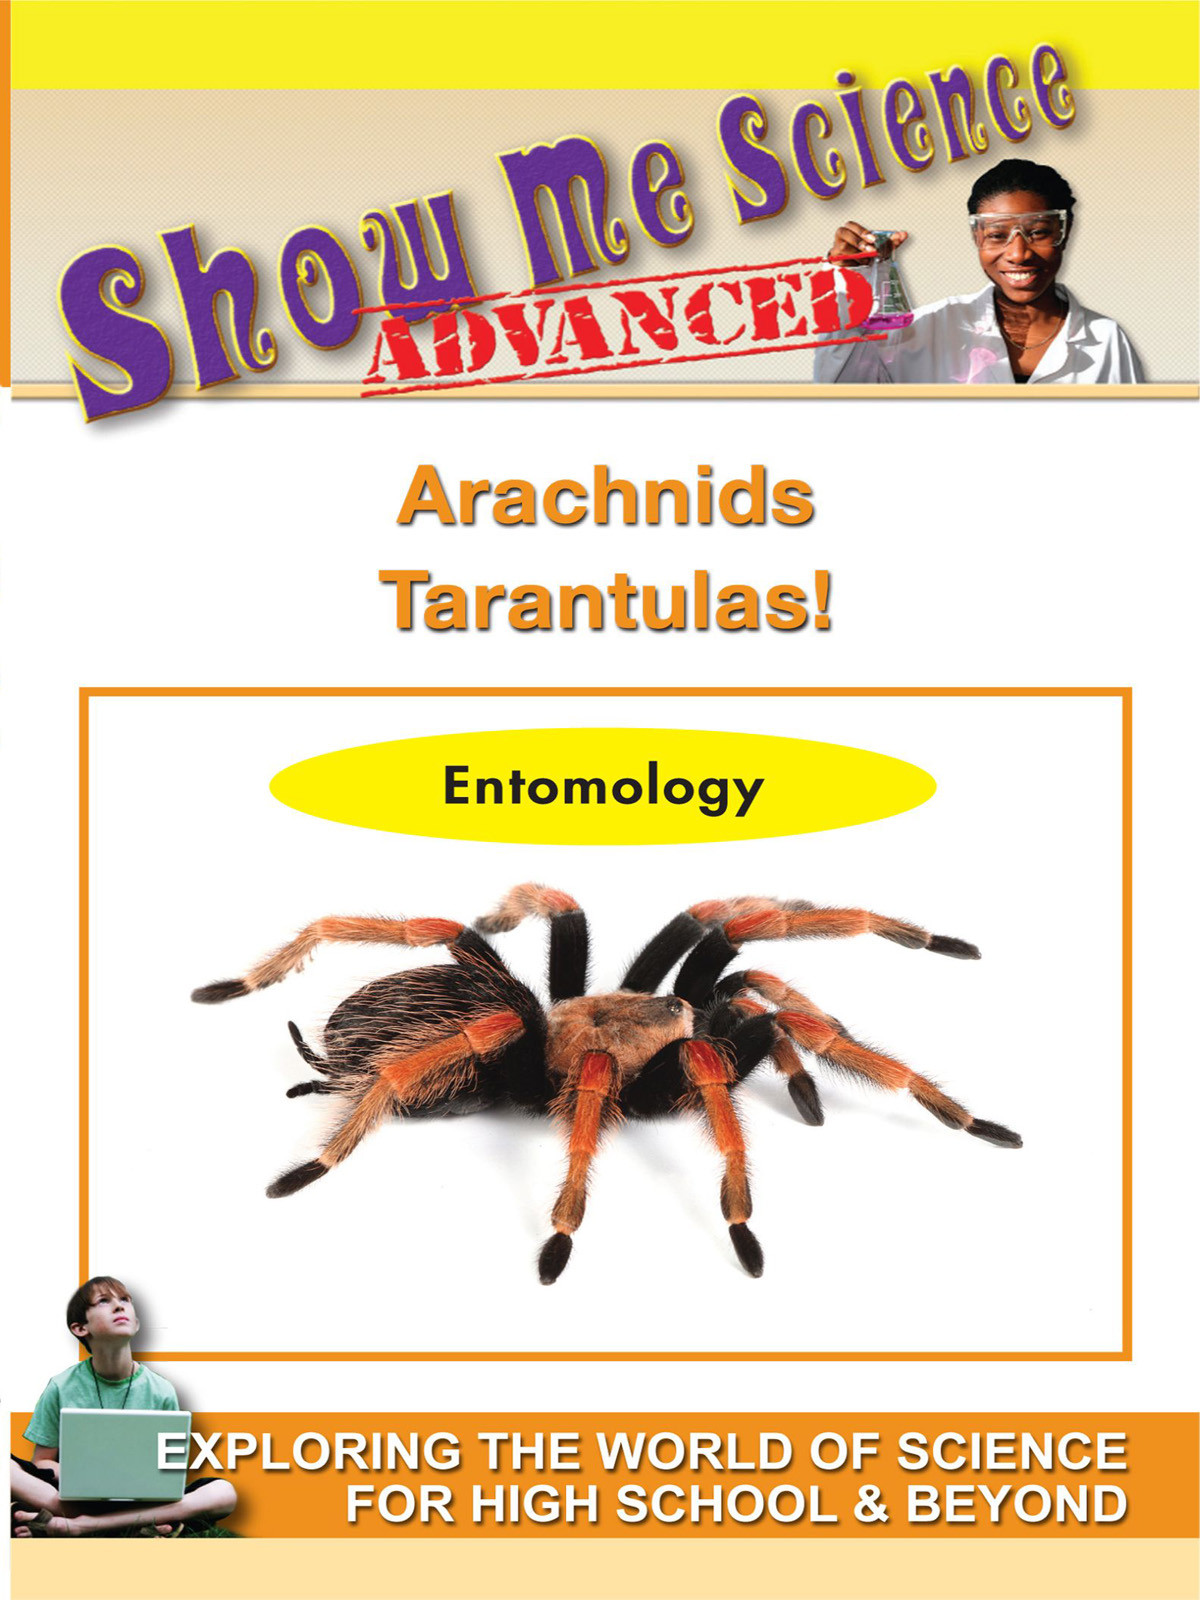 K4631 - Arachnids Tarantulas!